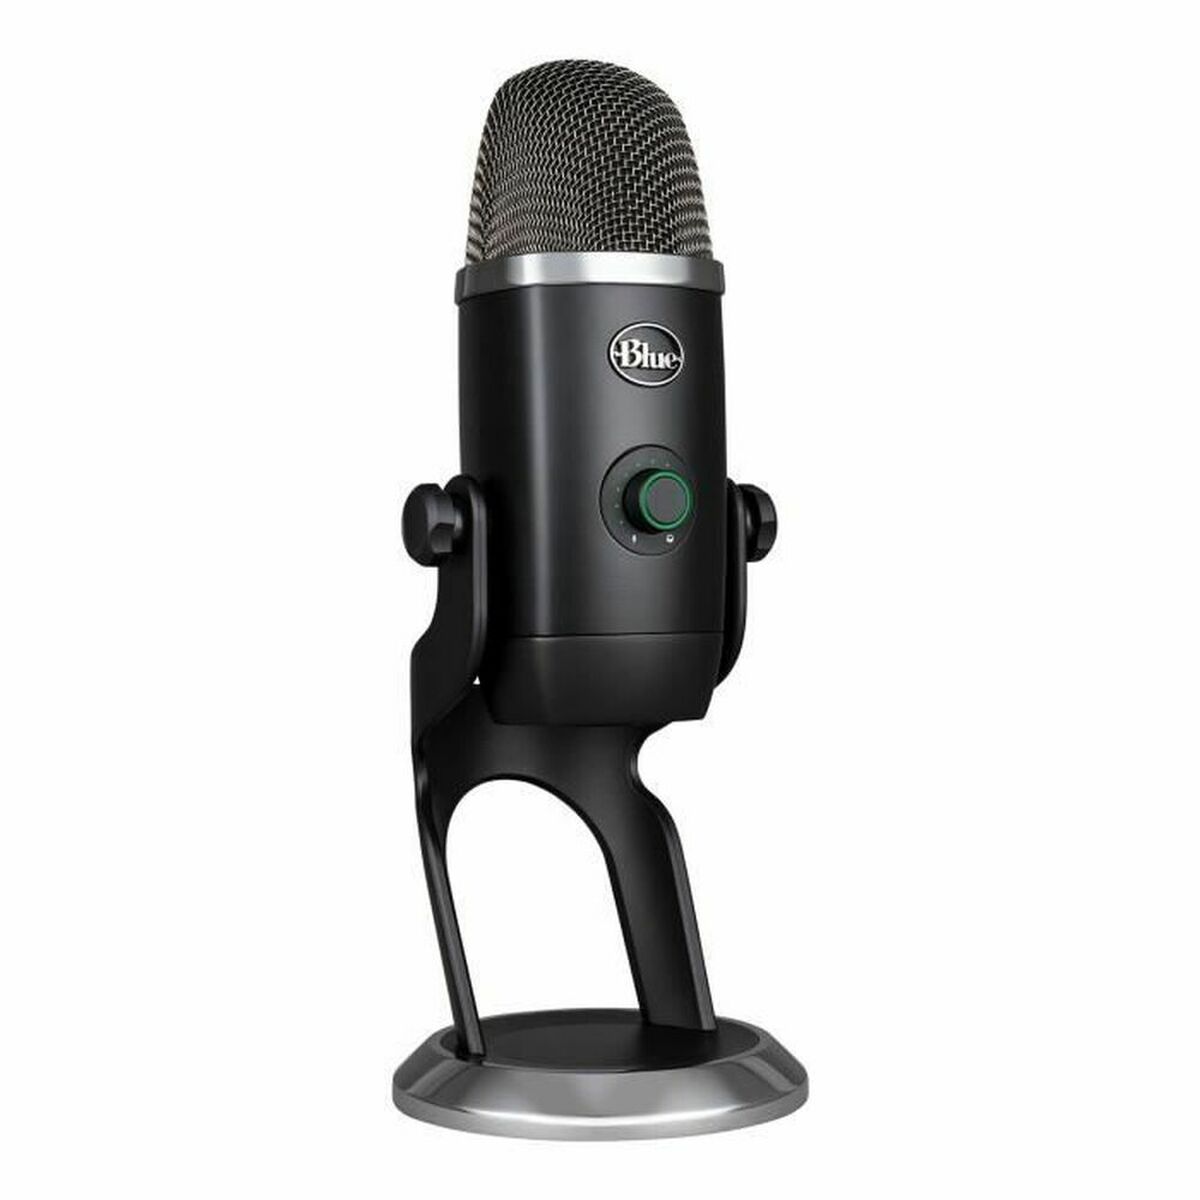 Mikrofon Logitech Yeti X Professional Sort